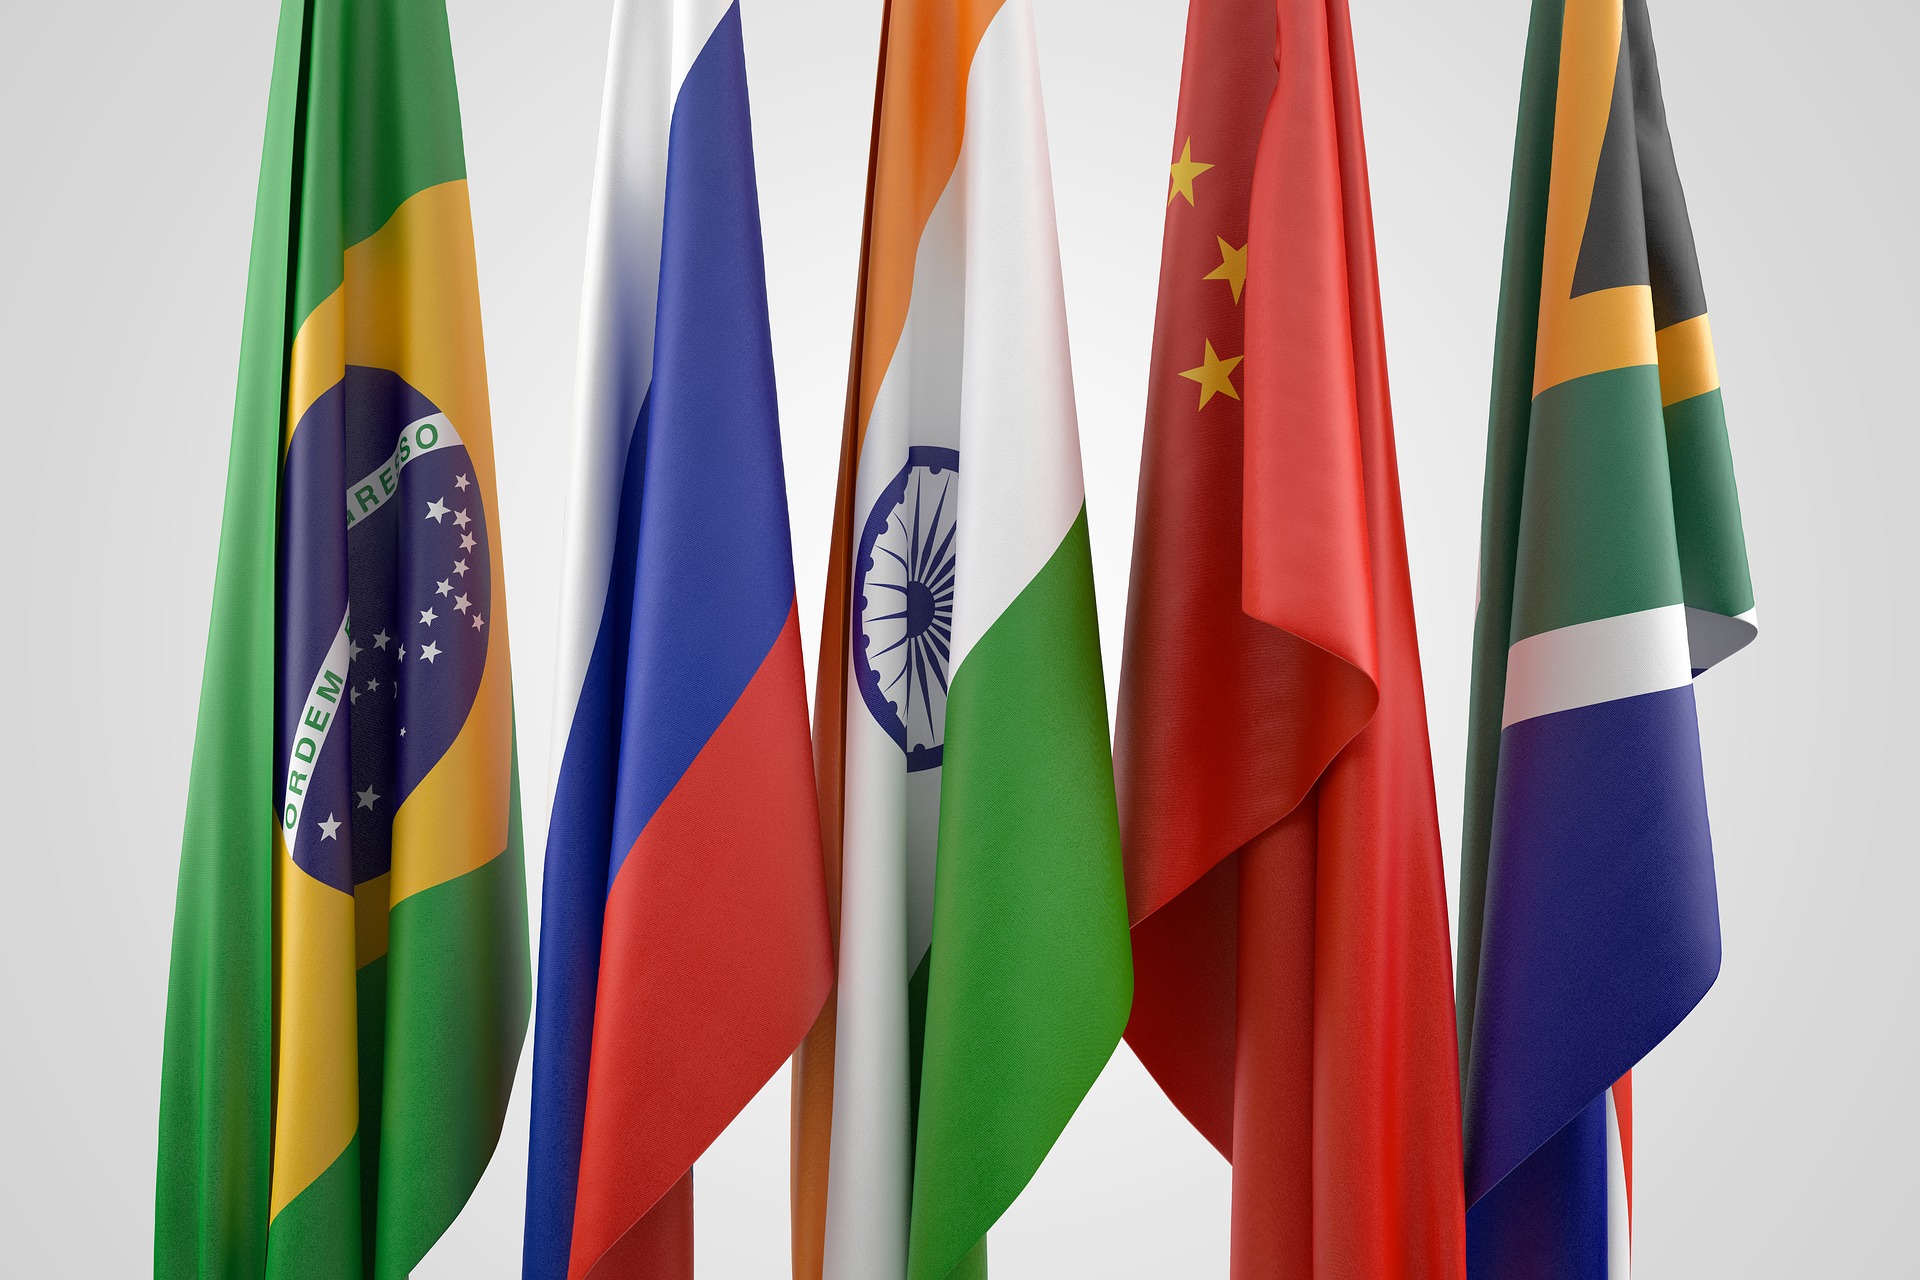 Los BRICS favorecerán acciones más multilaterales e inclusivas